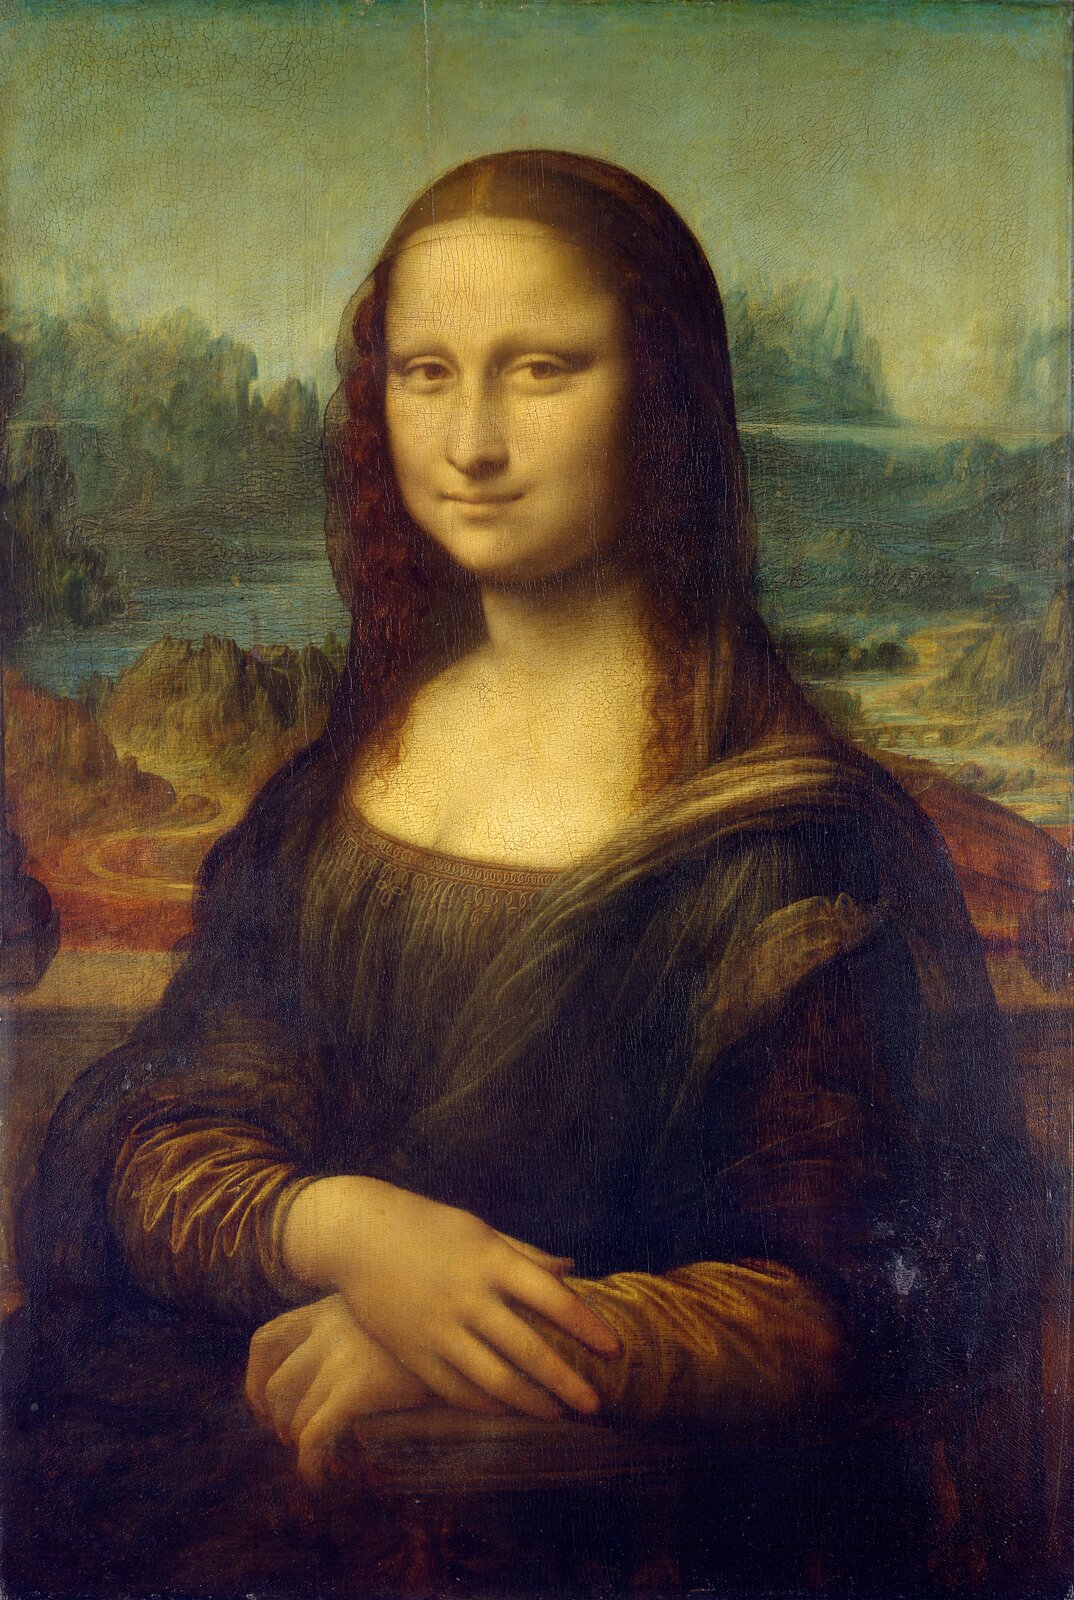 Ilustracja przedstawia obraz olejny „Mona Lisa”, autorstwa Leonarda da Vinci. Dzieło ukazuje portret damy w sukni z ciemno‑zielonym gorsetem i beżowymi rękawami. Na ramiona zarzucony ma niebieski płaszcz. Ciemne, drobno pofalowane włosy z przedziałkiem pośrodku głowy okrywa czarny, przezroczysty woal. Prawa dłoń ułożona jest na lewej. Na twarzy kobiety rysuje się delikatny uśmiech. Spokojna, pełna dostojeństwa postać ukazana jest na dynamicznym tle, pełnym zakoli rzek, krętych ścieżek i ostrych szczytów pagórków. Dzieło utrzymane jest w wąskiej, ciemnej tonacji z dominacją ciepłych beżów, zieleni oraz chłodnym błękitem w tle.